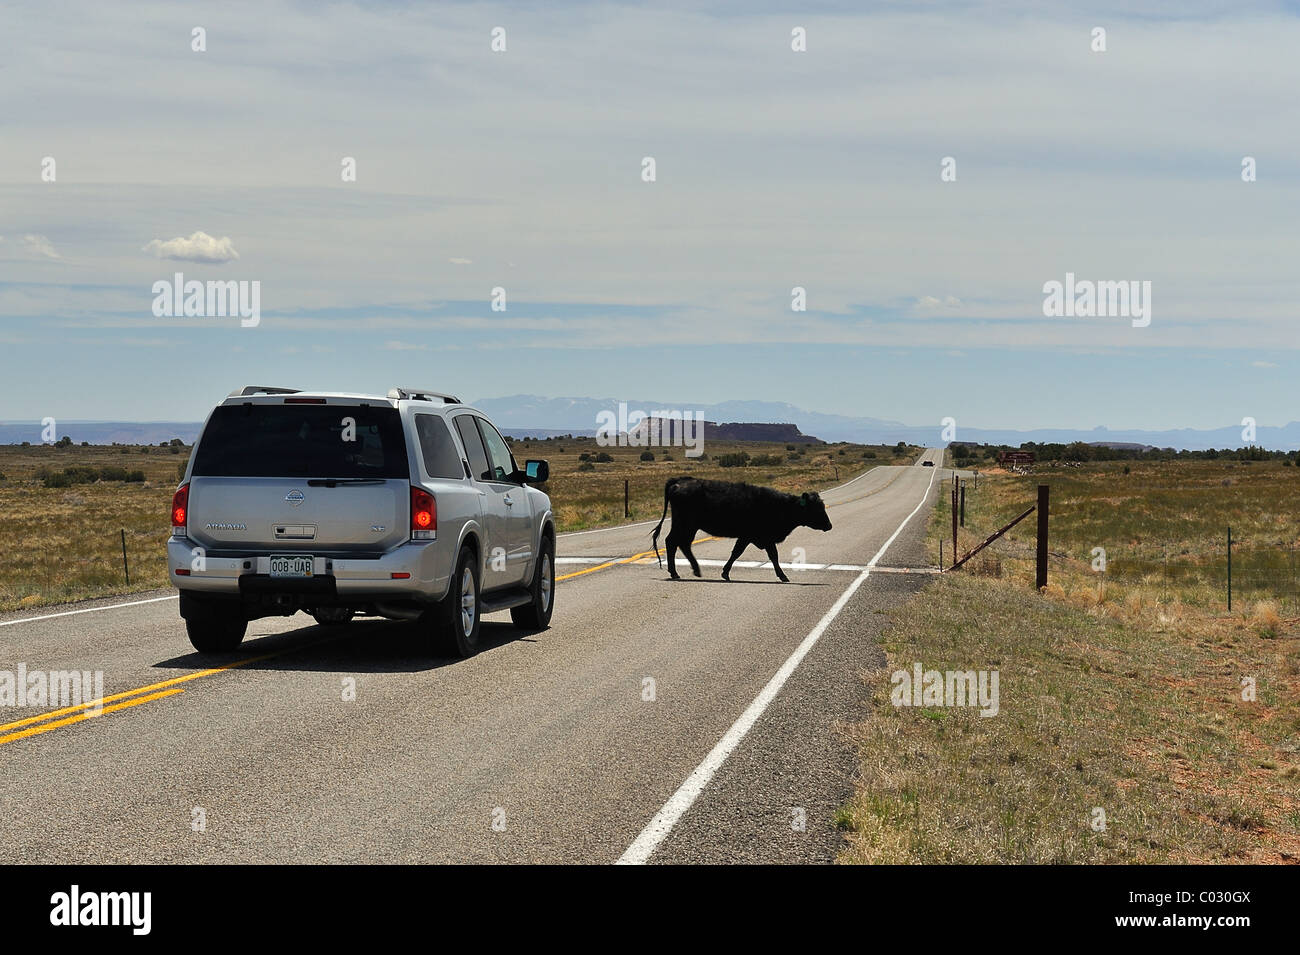 Vache traversant une route en face d'une voiture à Canyonlands National Park, Island in the Sky, USA Banque D'Images